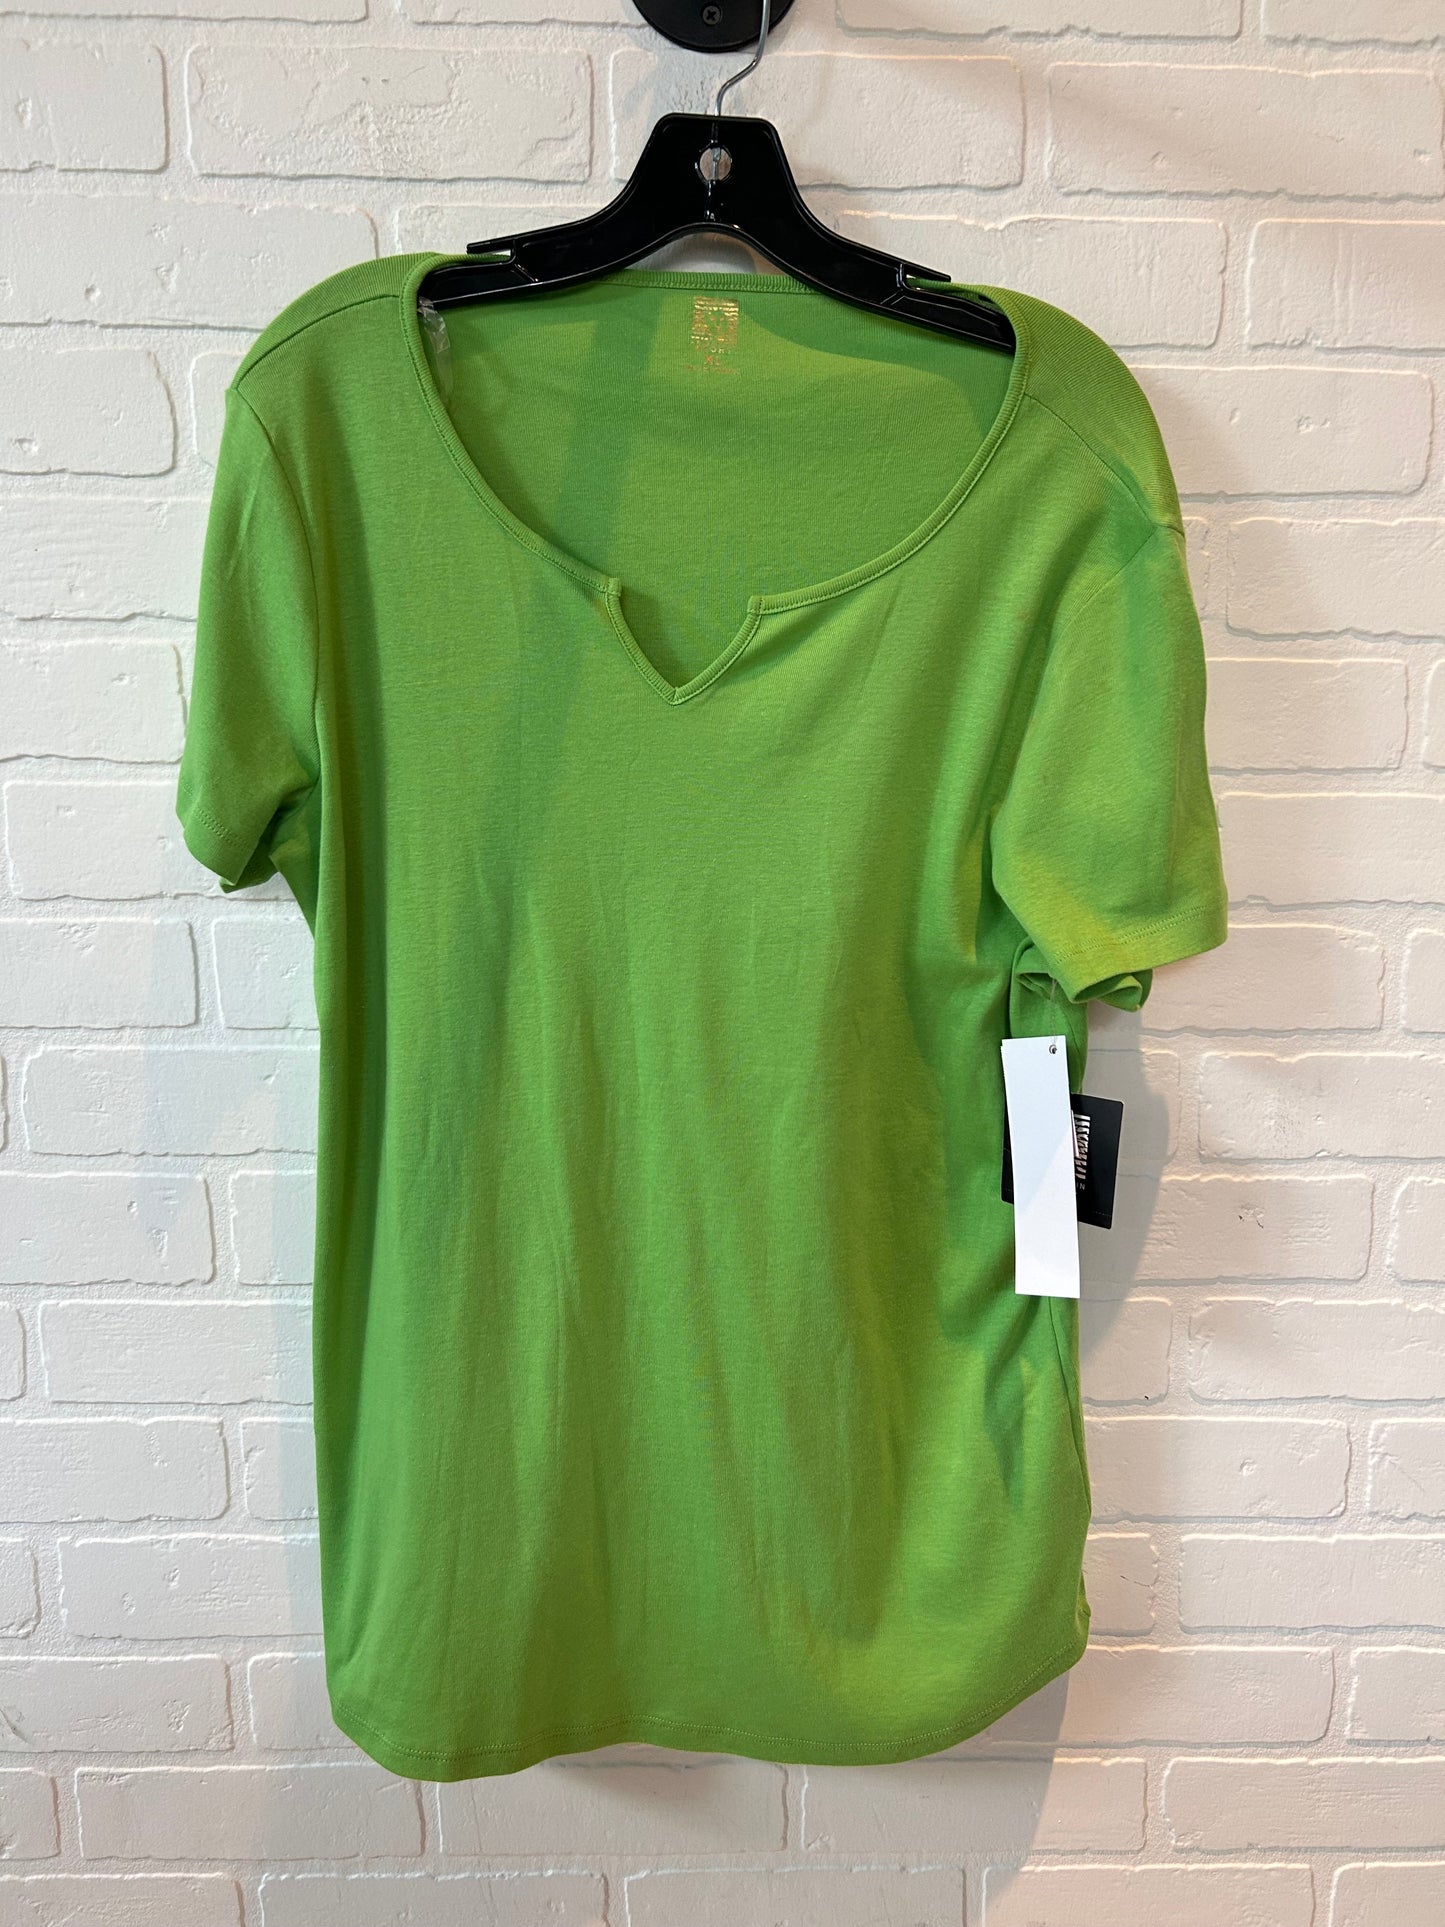 Green Top Short Sleeve Basic Anne Klein, Size Xl